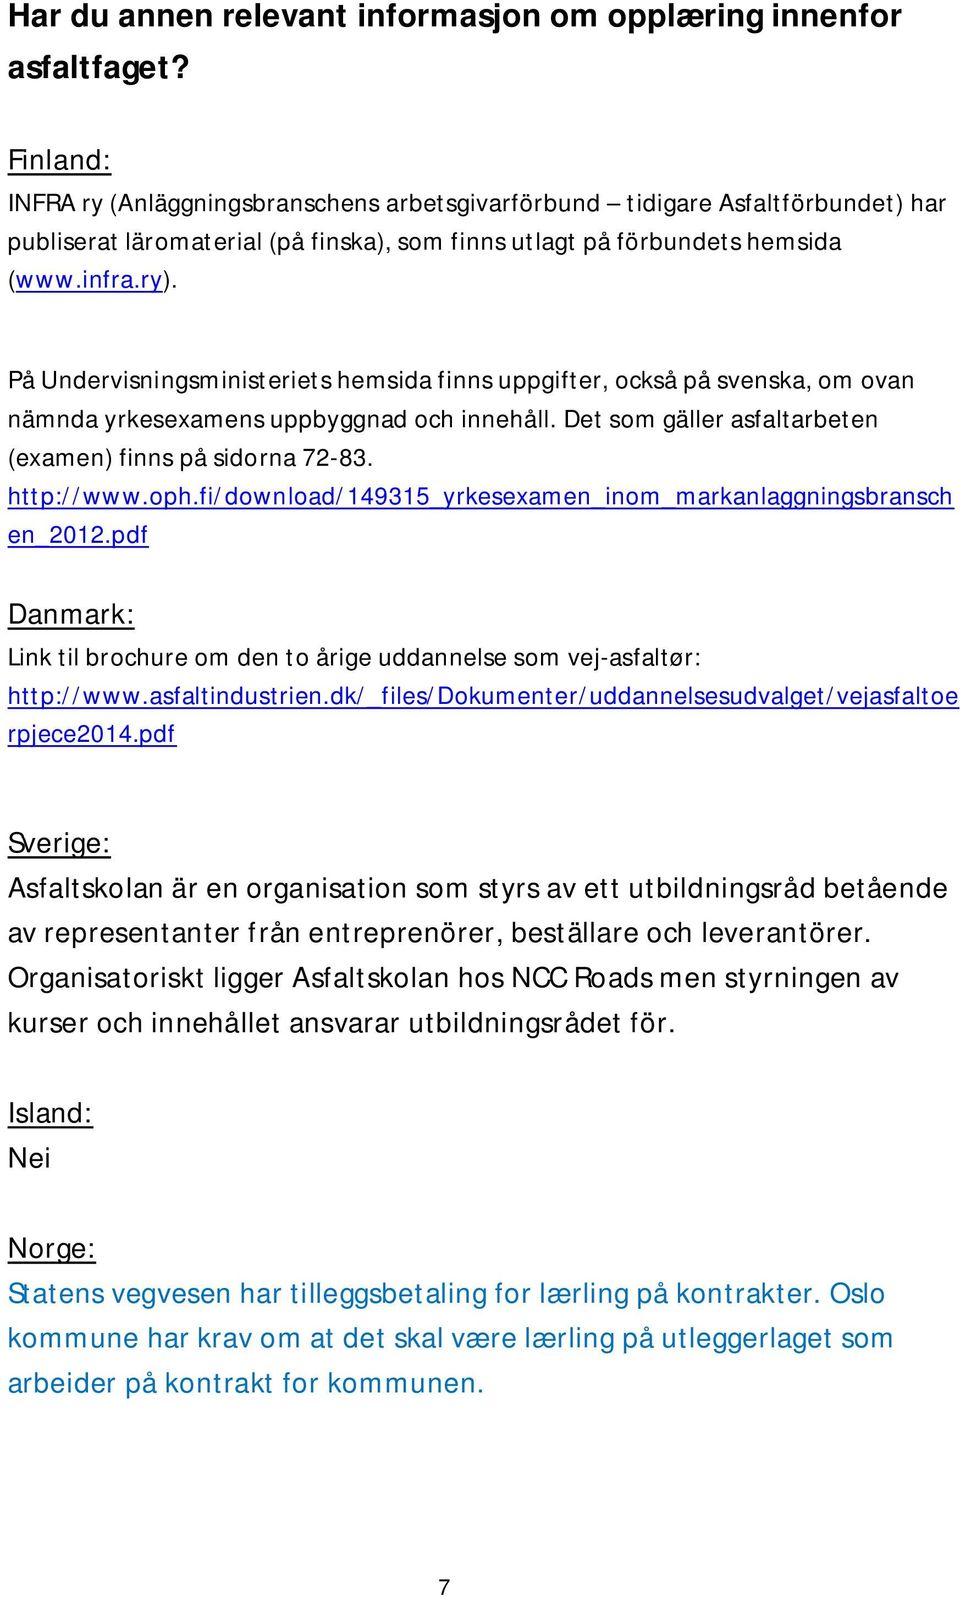 På Undervisningsministeriets hemsida finns uppgifter, också på svenska, om ovan nämnda yrkesexamens uppbyggnad och innehåll. Det som gäller asfaltarbeten (examen) finns på sidorna 72-83. http://www.